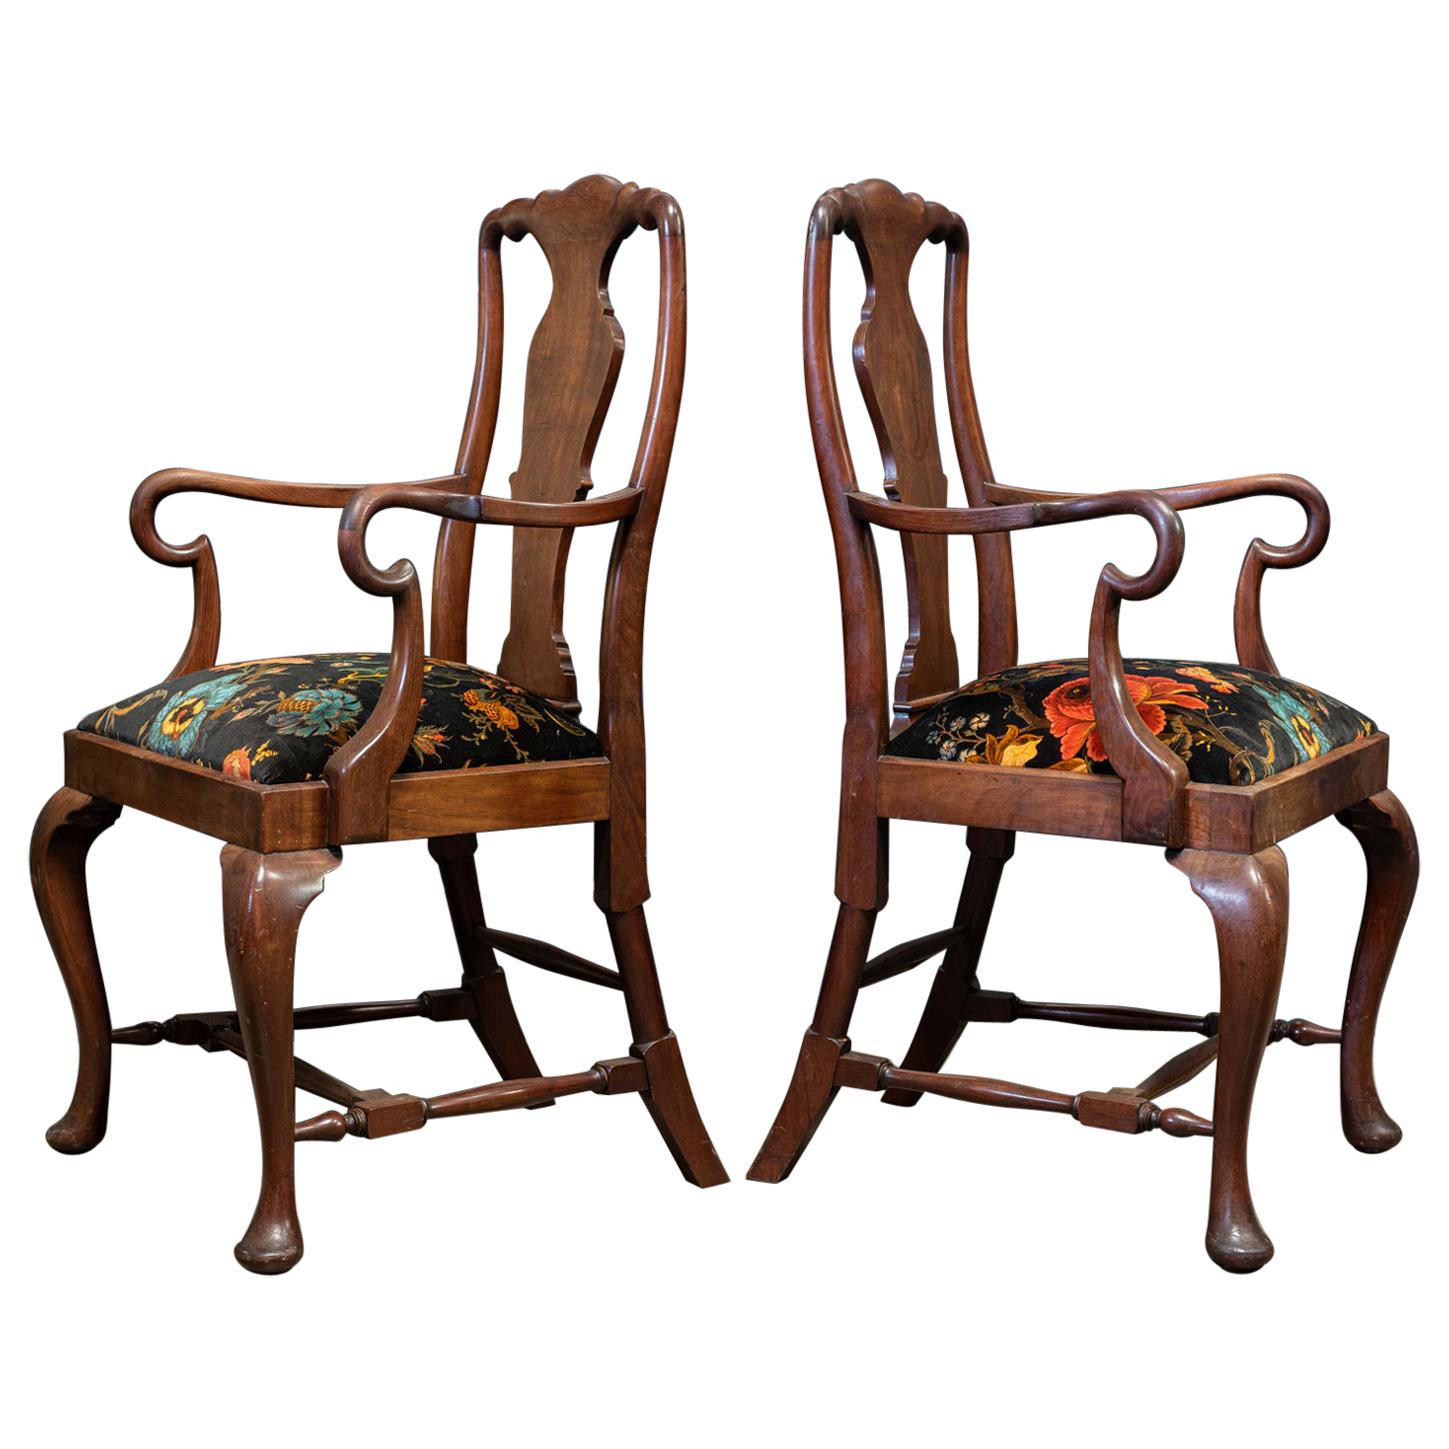 Paire de grandes chaises anglaises du 19ème siècle en acajou sculpté à l'accoudoir, retapissées